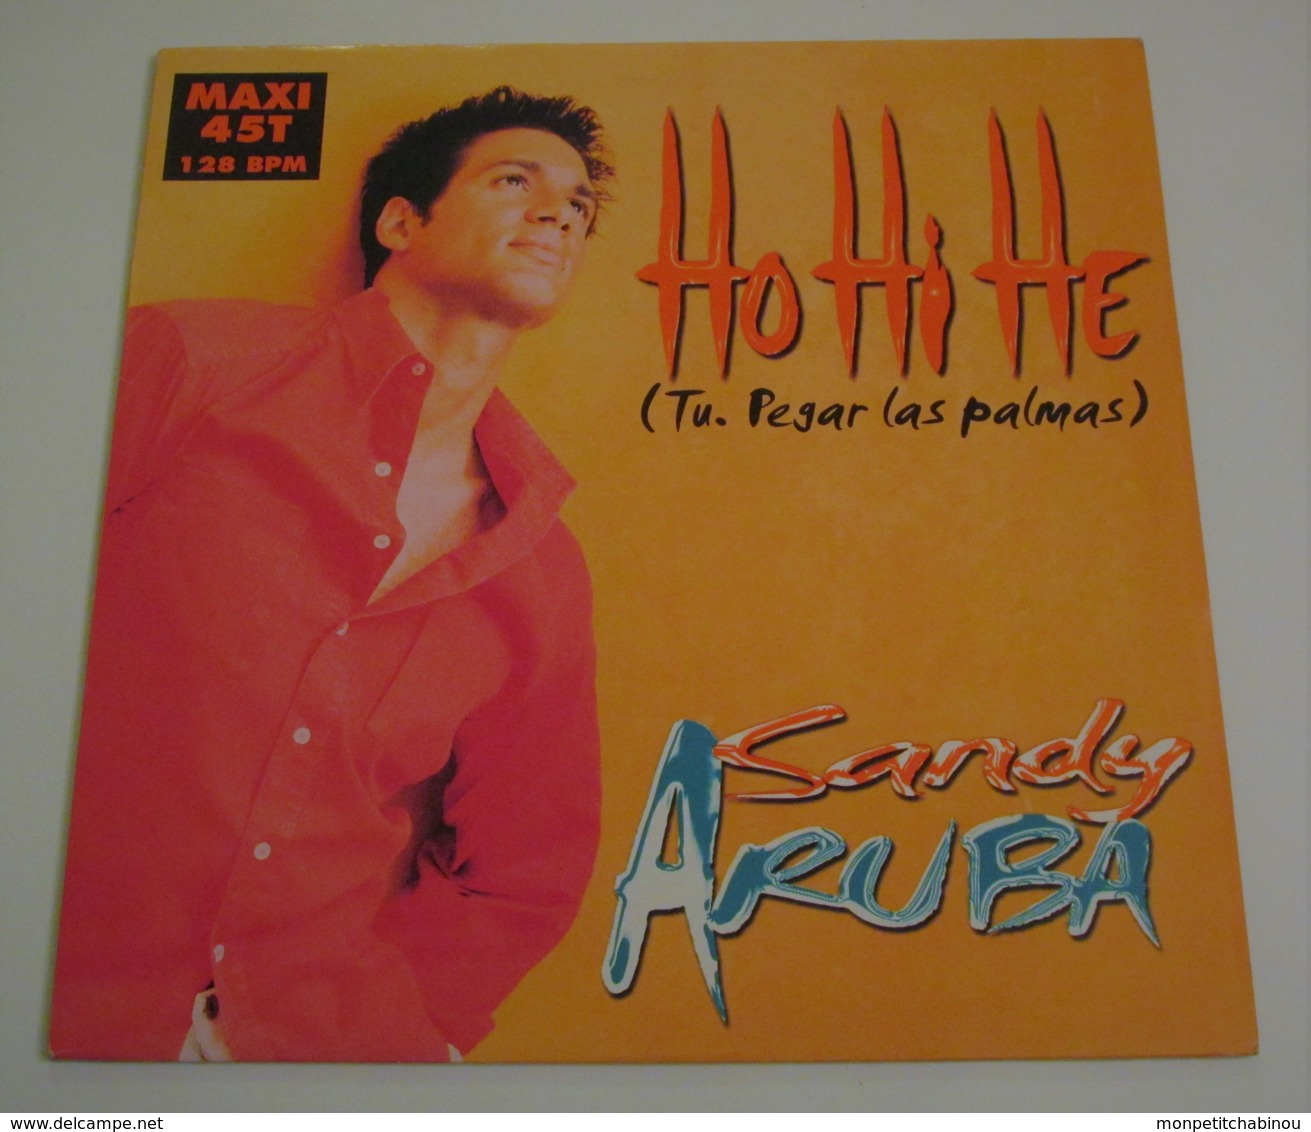 Maxi 45T SANDY ARUBA : Ho Hi He - 45 Rpm - Maxi-Single